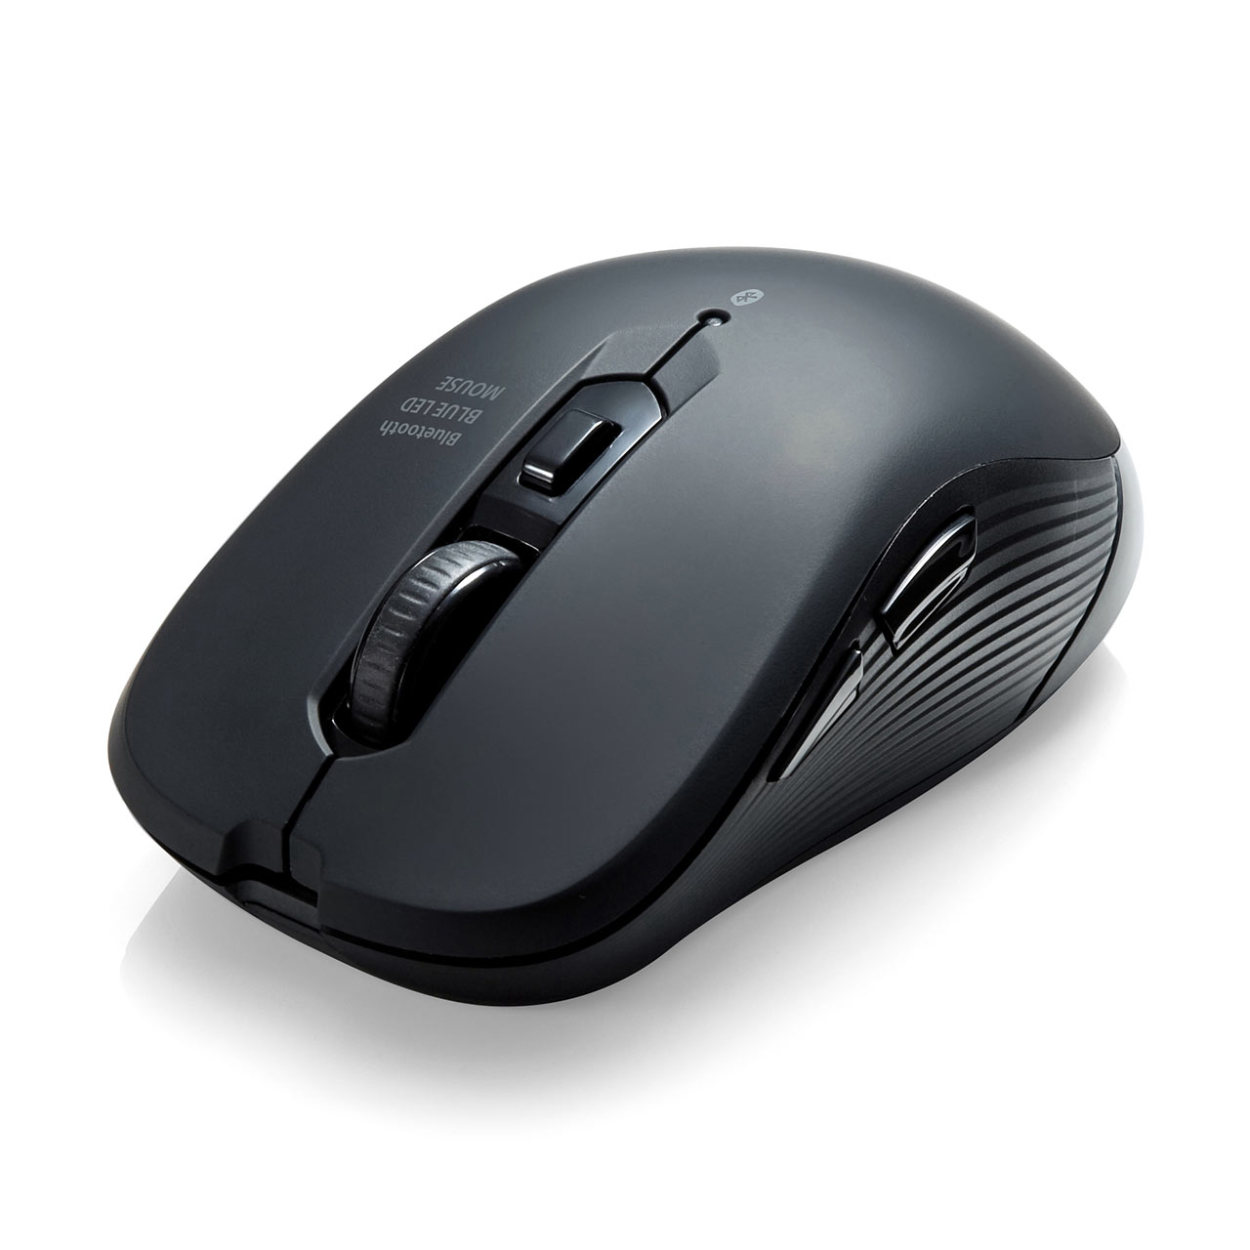 マウス Bluetoothマウス ワイヤレスマウス ブルーLEDセンサー 無線 5ボタン カウント切り替え iPadOS対応 400-MABT158